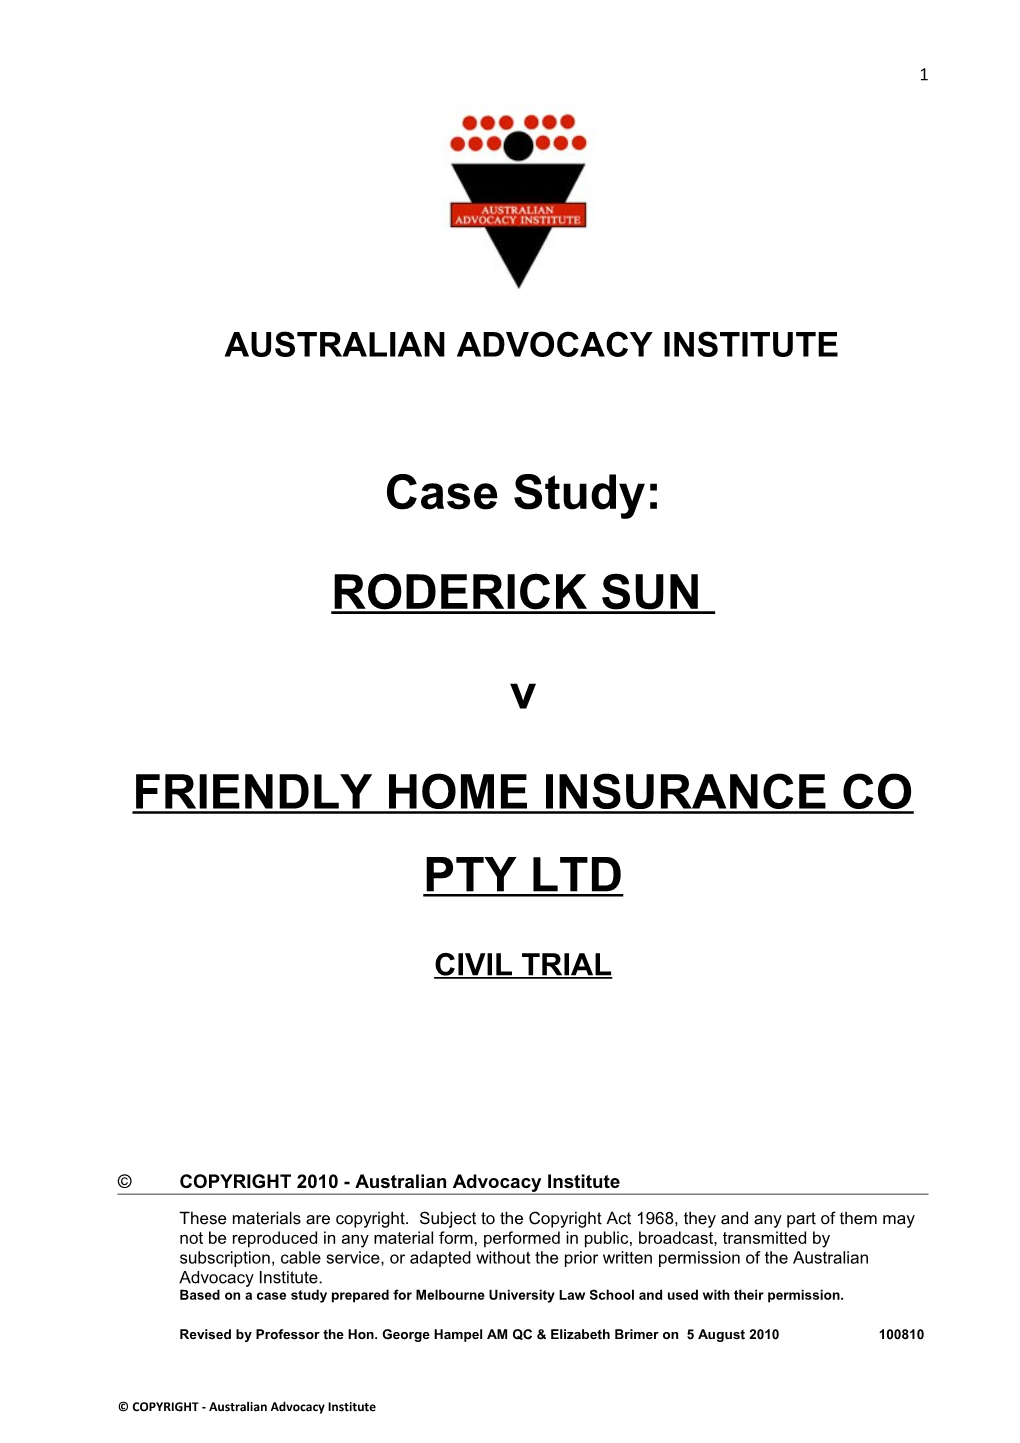 Friendly Home Insurance Co Pty Ltd